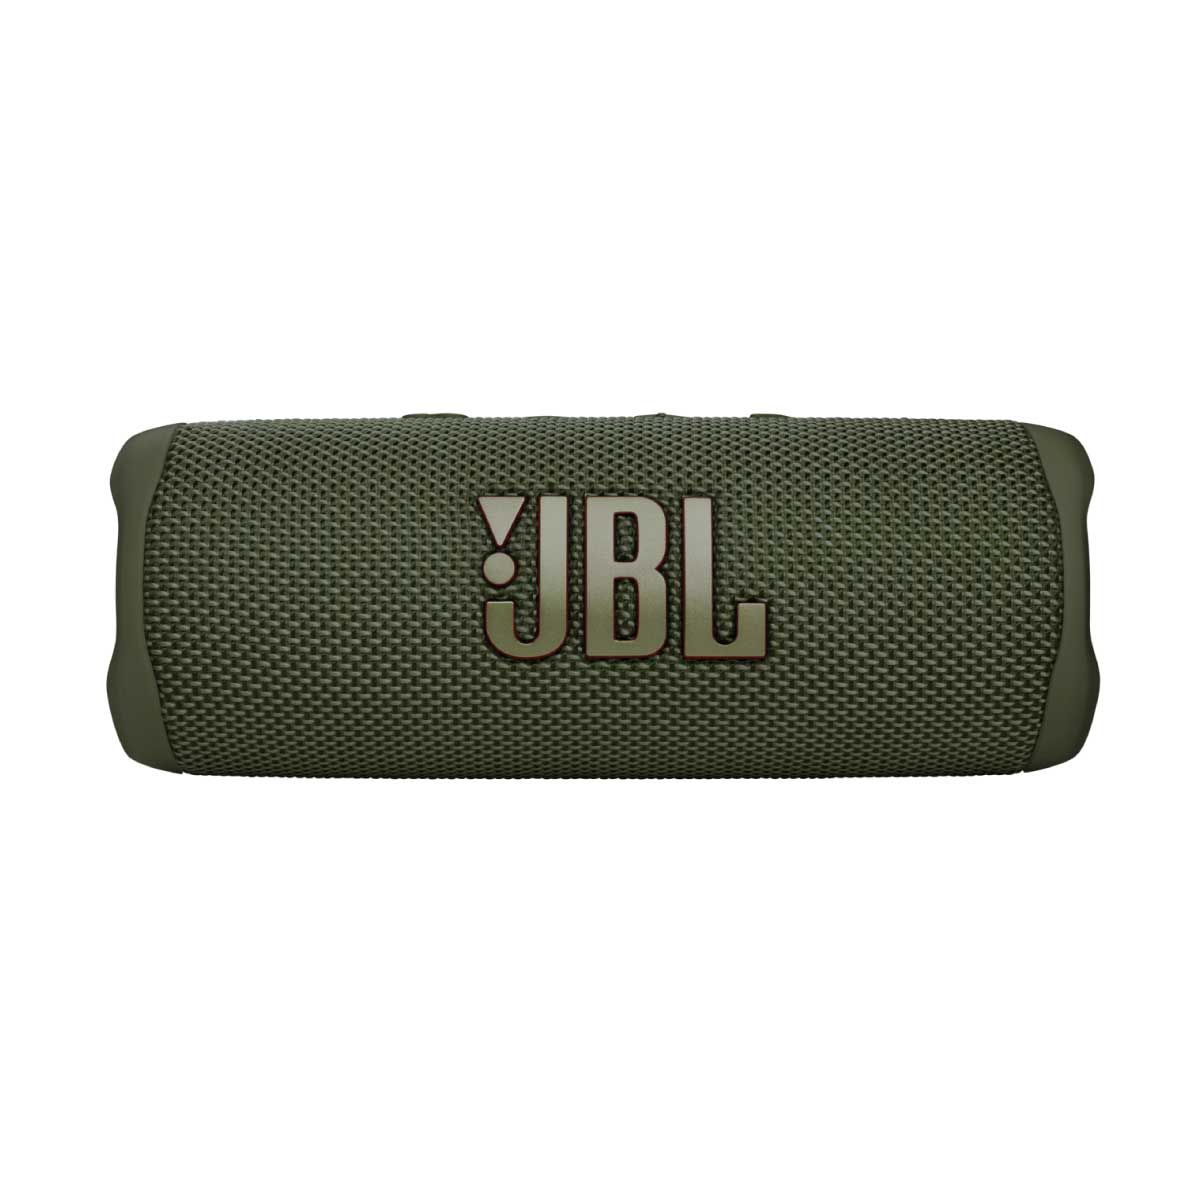 JBL ลำโพงพกพาบลูทูธ รุ่น FLIP6 สีเขียว กันฝุ่น/กันนํ้า